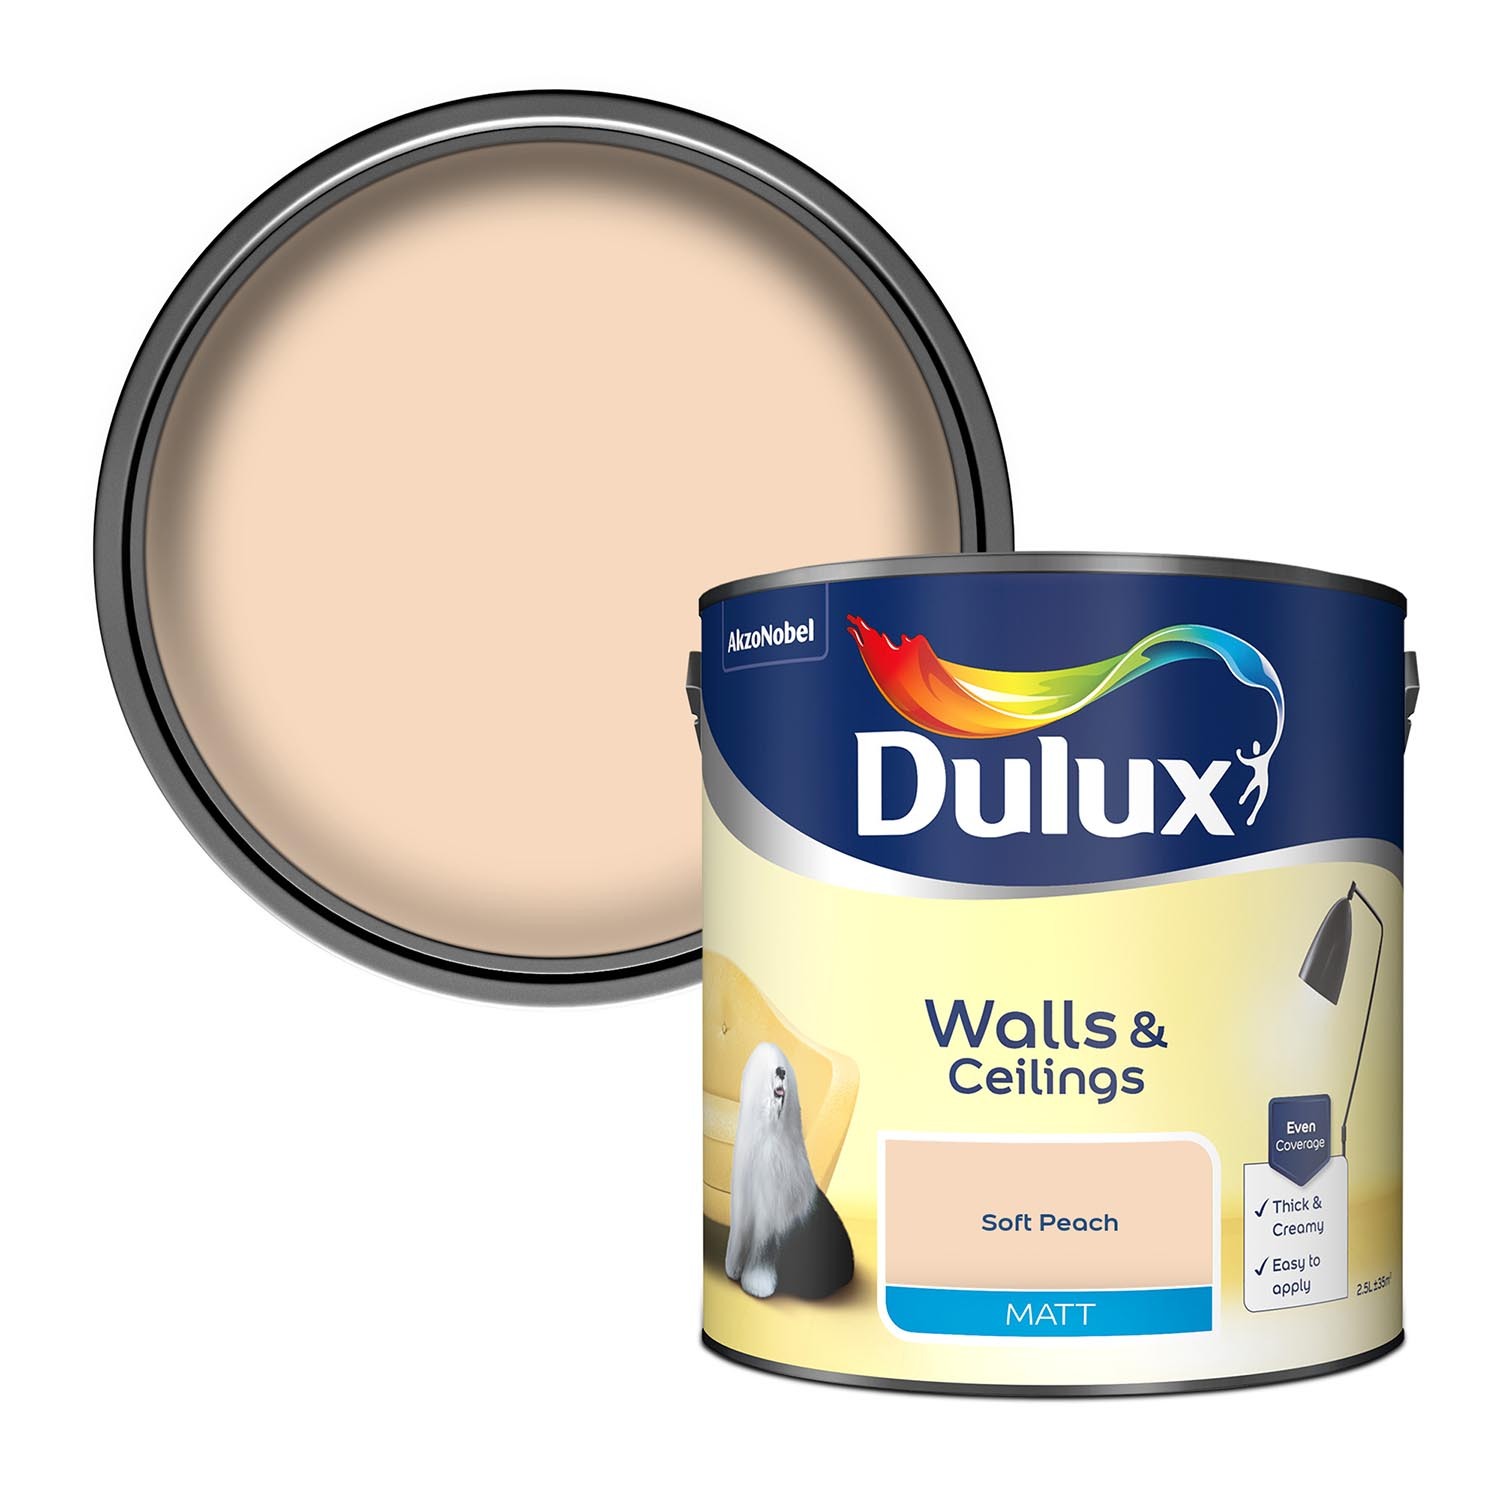 Dulux Walls & Ceilings Soft Peach Matt Emulsion Paint 2.5L Image 1